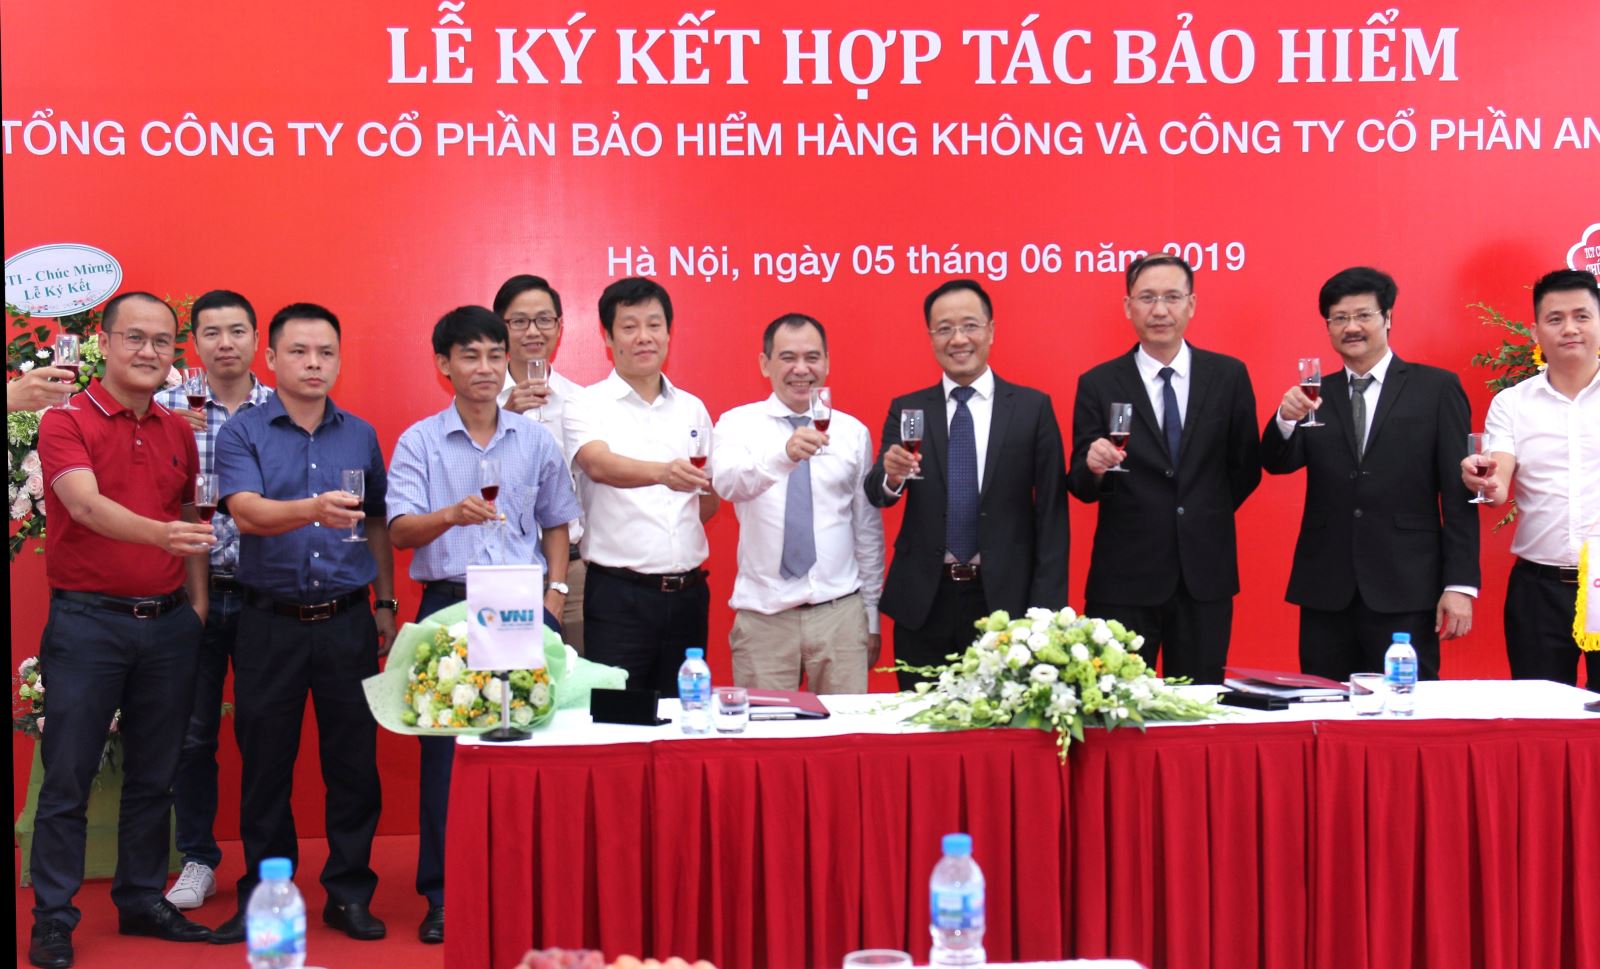 VNI & Anycar Việt Nam ký hợp tác bảo hiểm 3